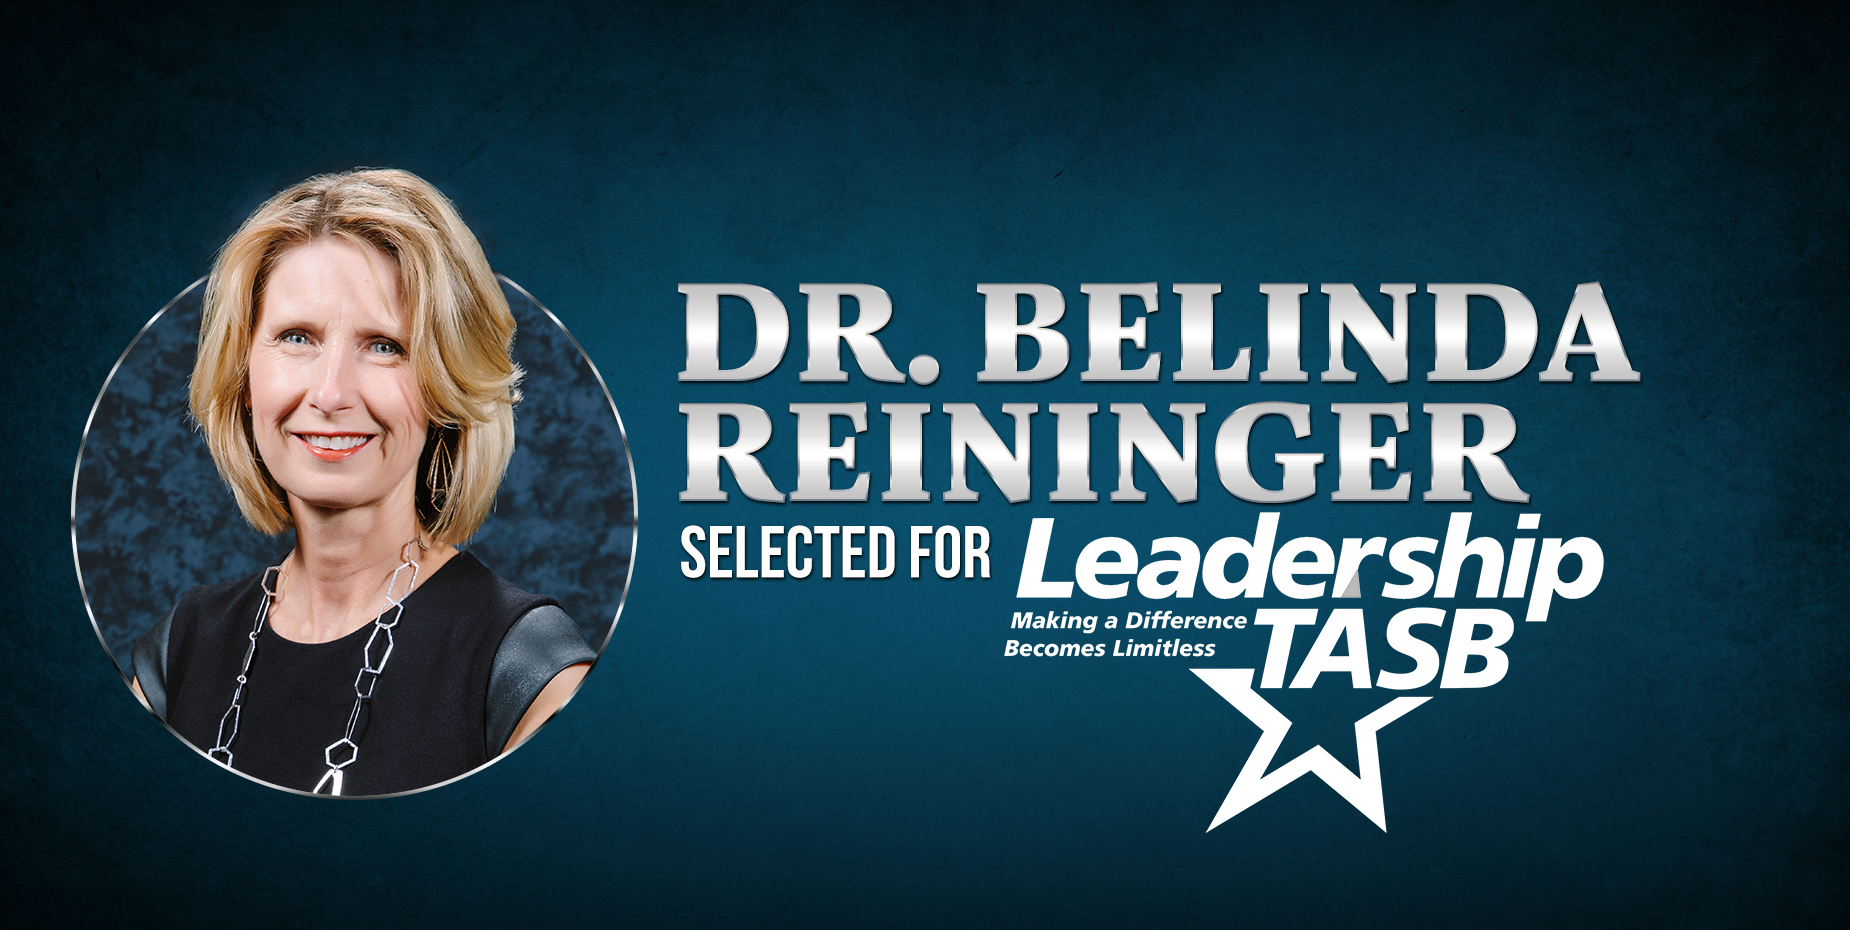 La Dra. Belinda Reininger fue seleccionada para la Clase de Liderazgo TASB.